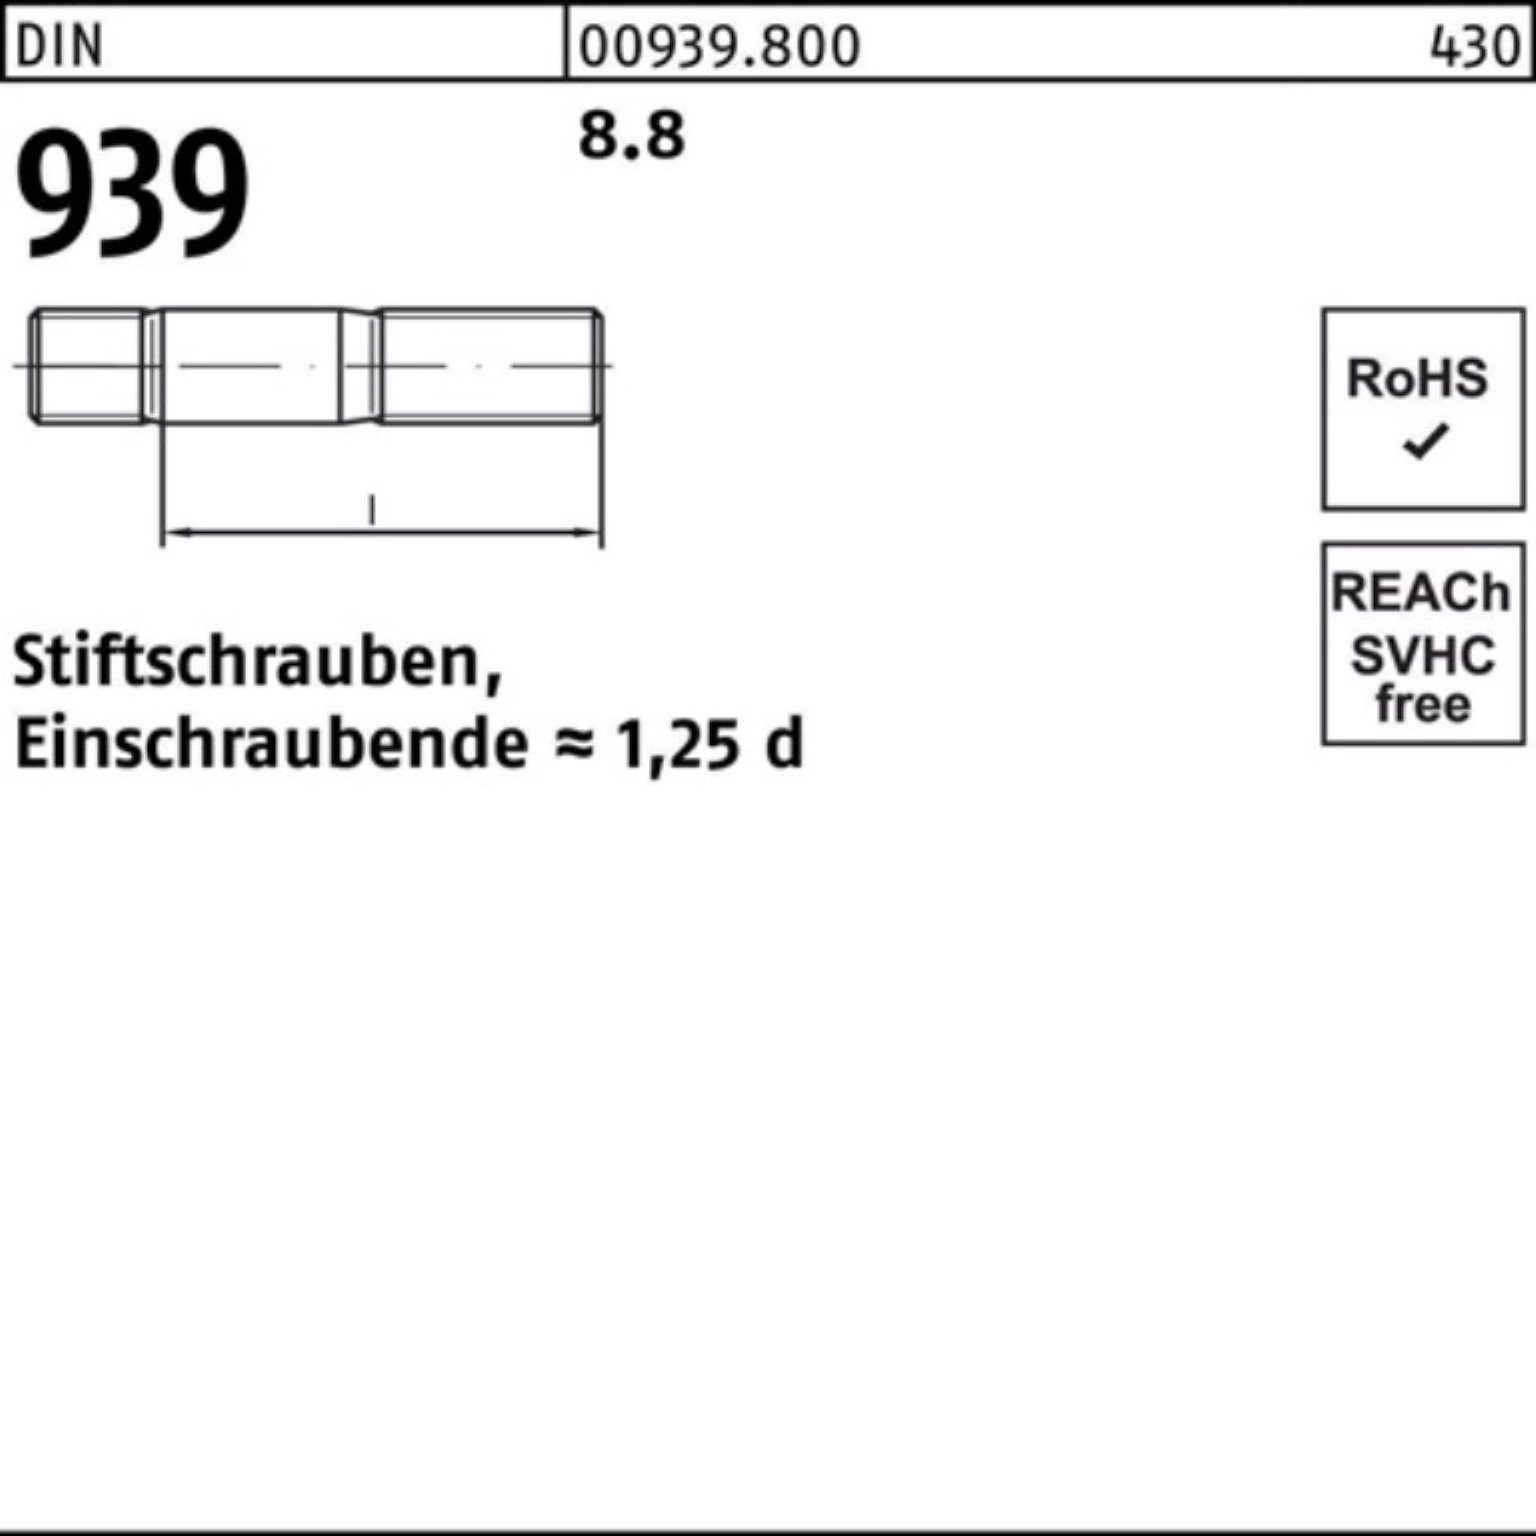 DIN Einschraubende=1,25d Stiftschraube S Stiftschraube Pack 939 Reyher 60 8.8 100er 10 M24x